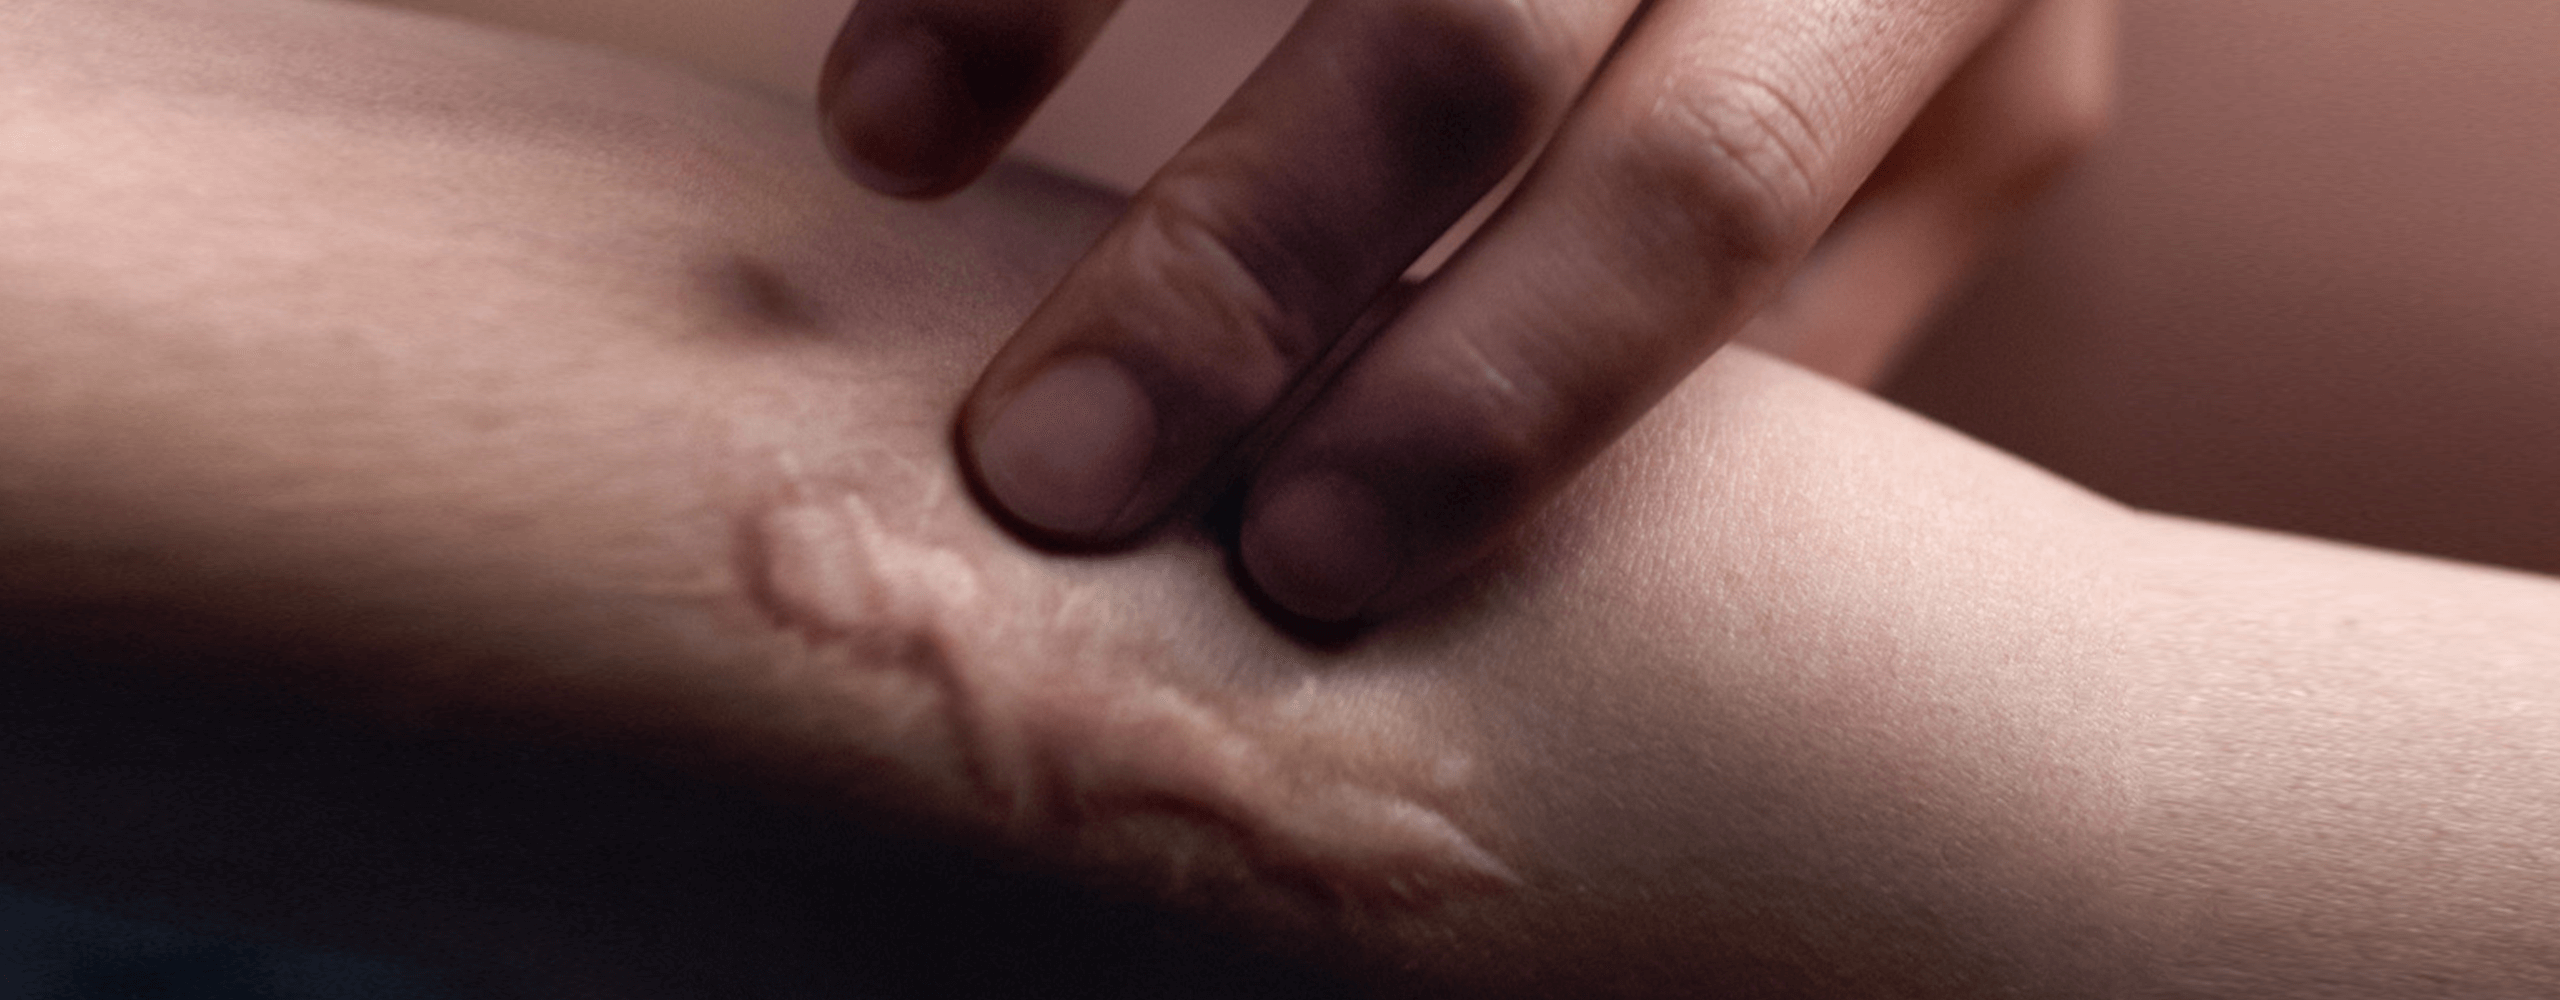 Cicatriz en la piel de una persona